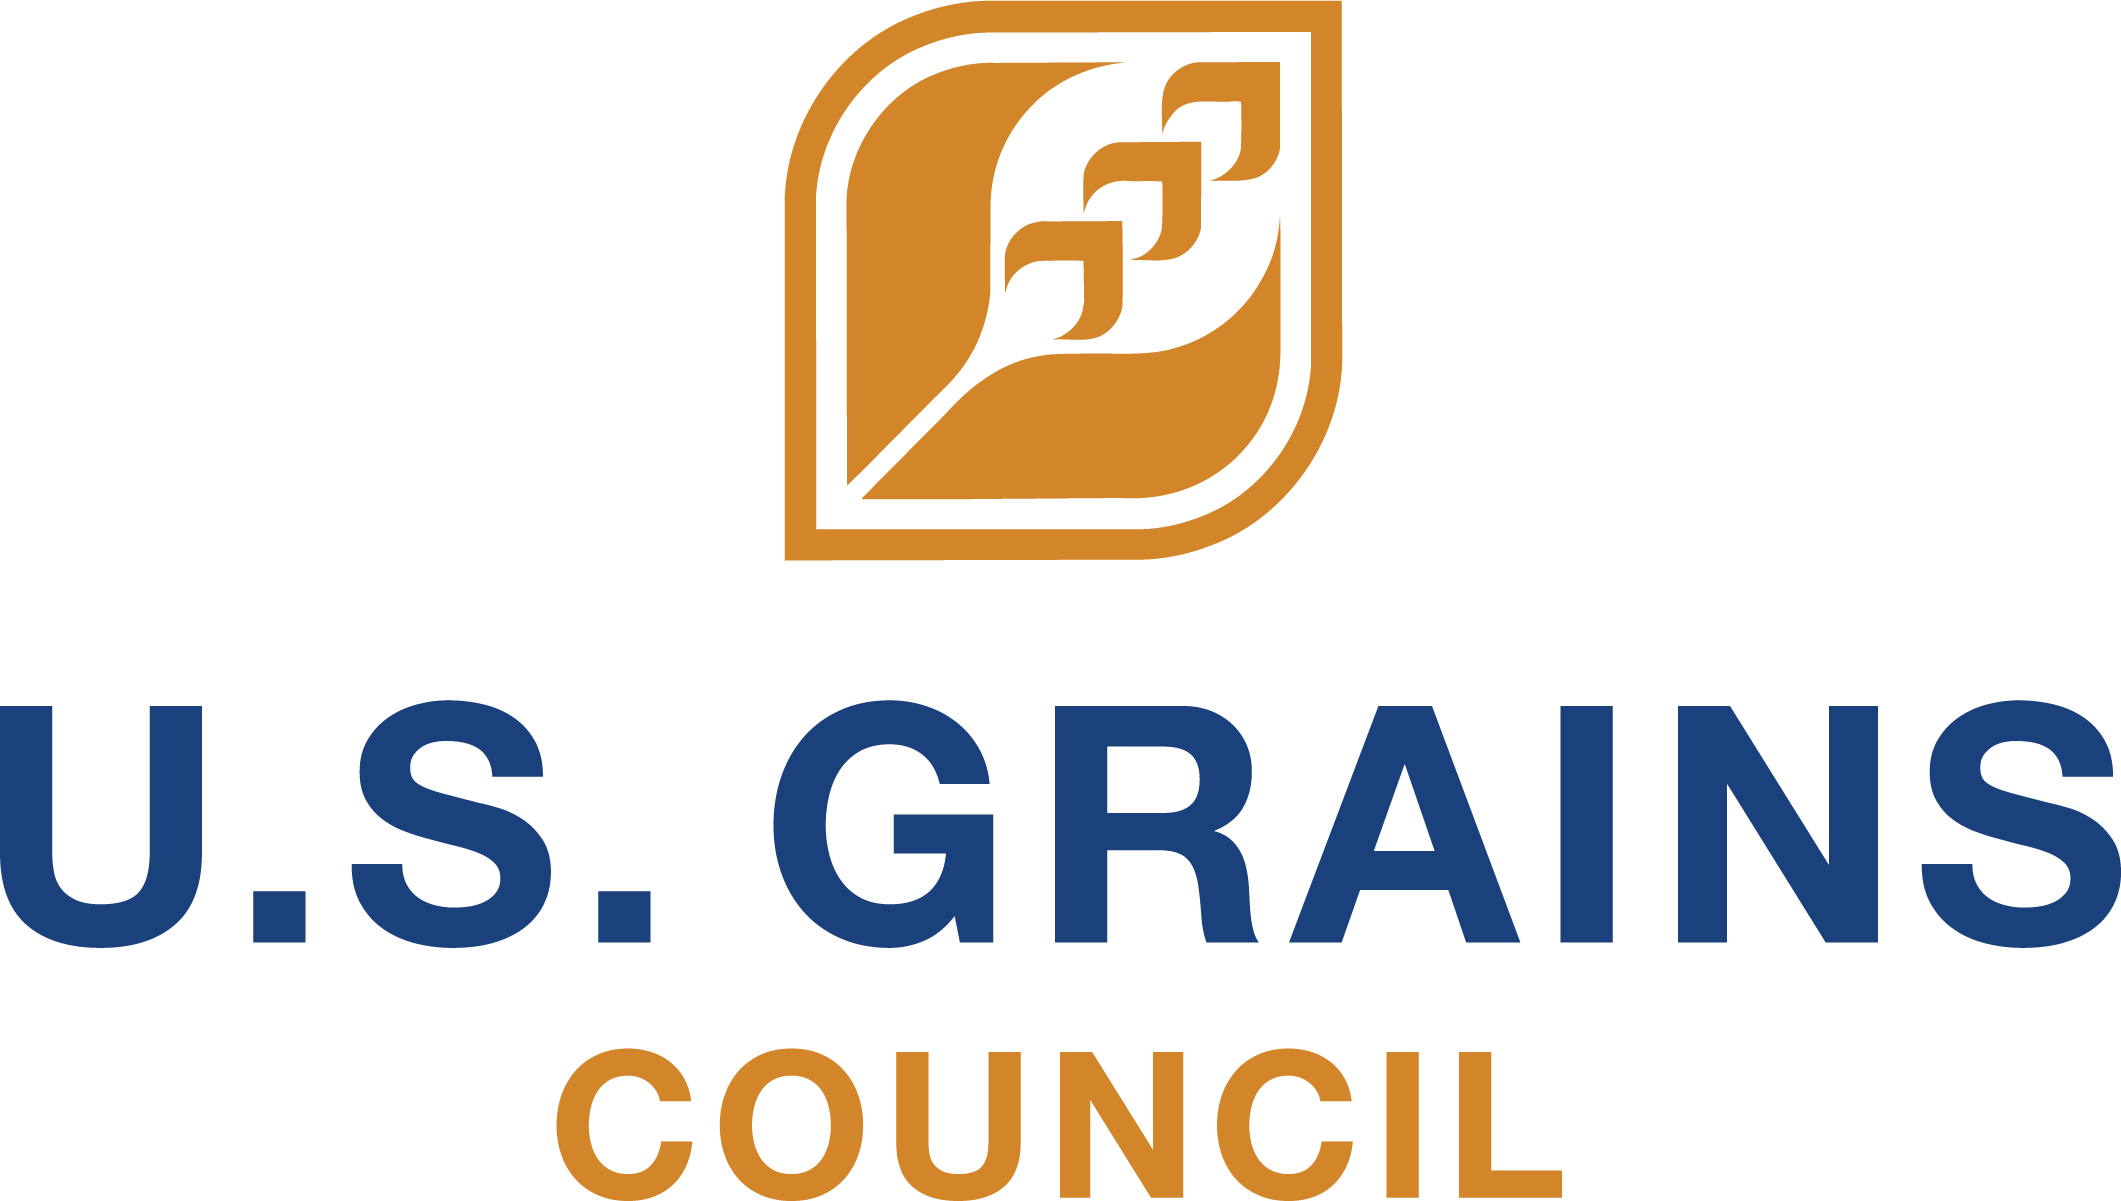 U.S. Grains Council: Regional Ethanol Manager for EU, UK and Canada